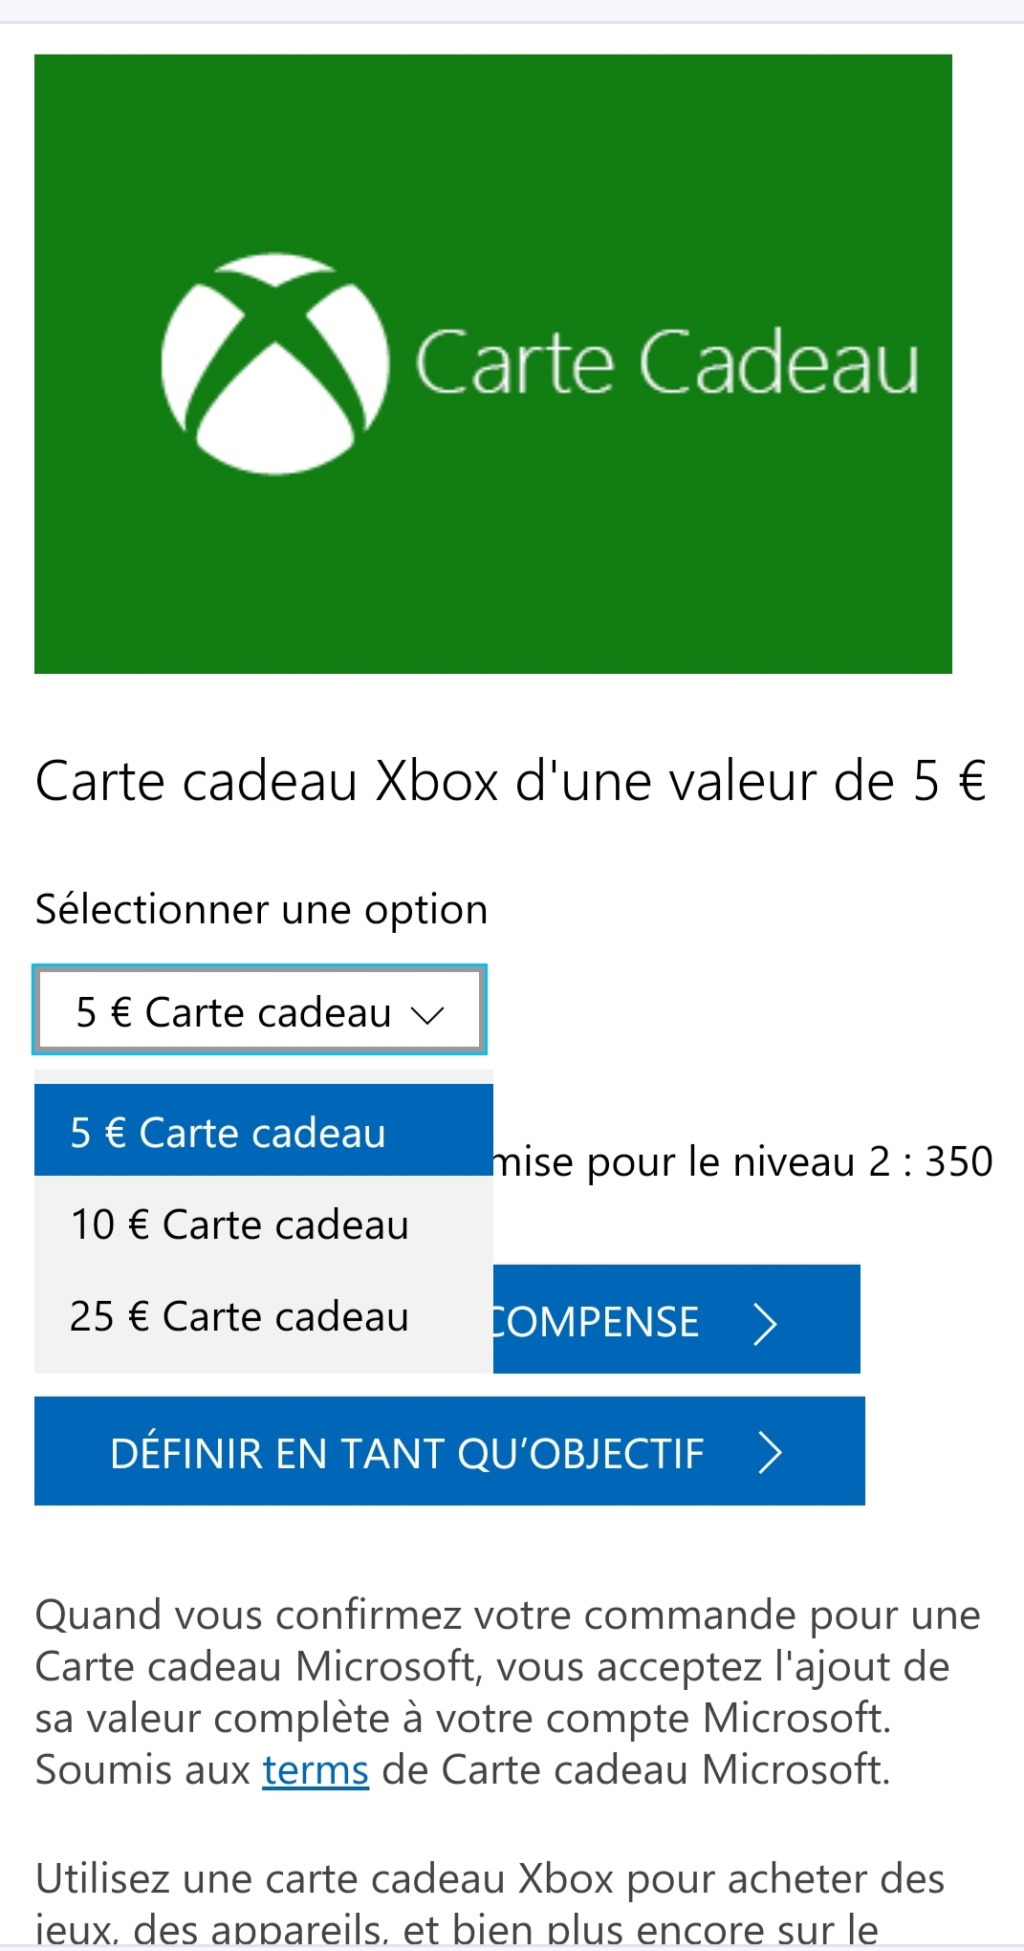 Microsoft Rewards: ou comment obtenir des abos/de l'argent pour votre Xbox Img_2013